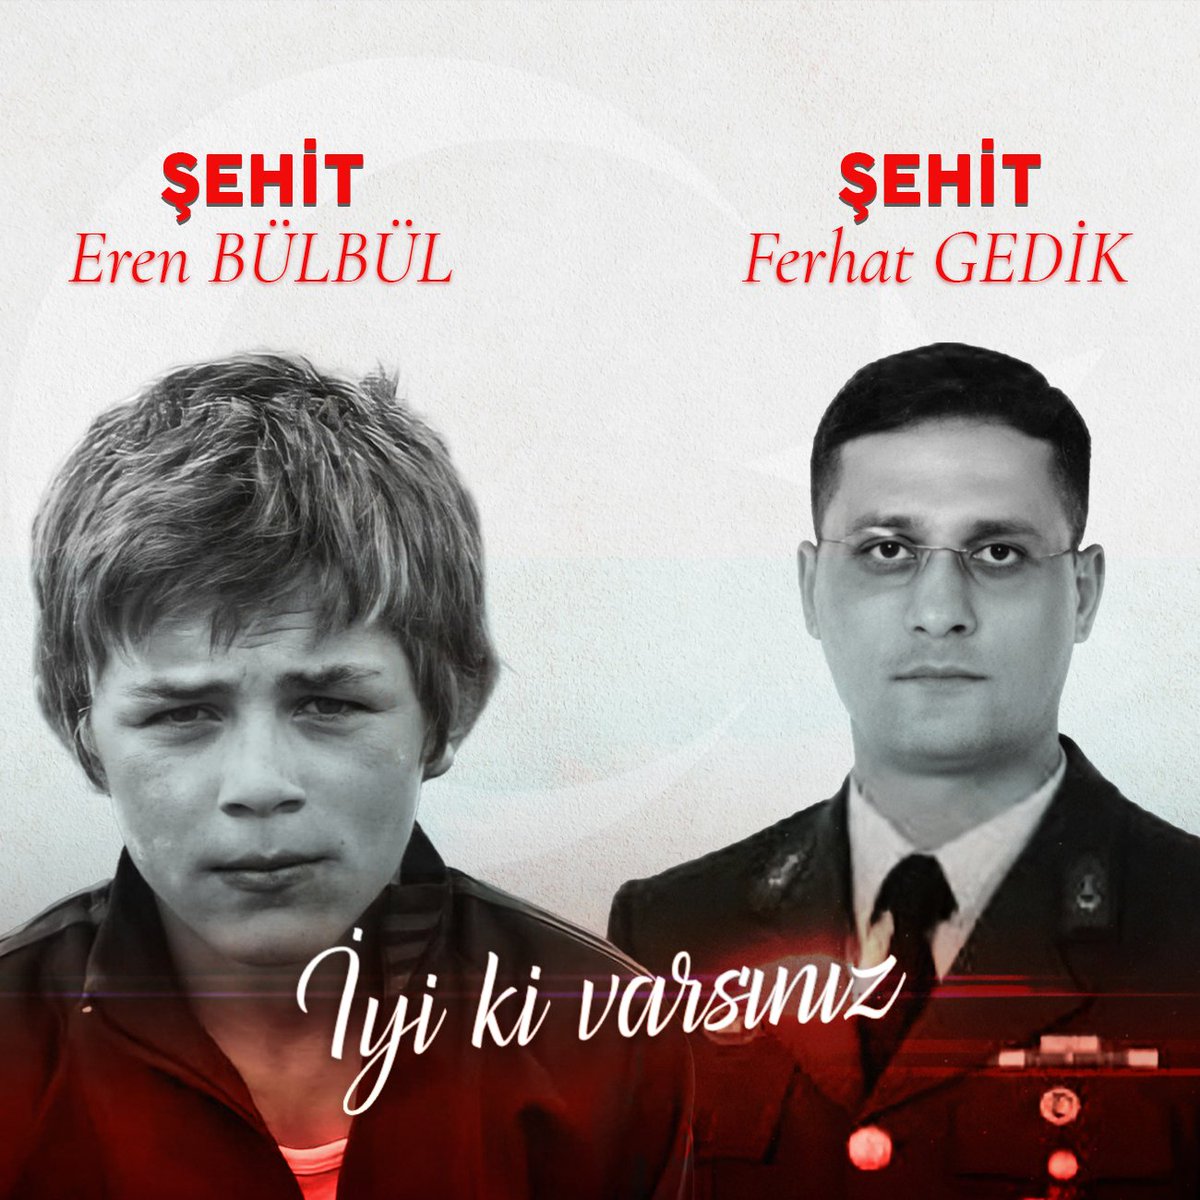 Şehadete birlikte yürüyen kahraman şehitlerimiz Eren Bülbül ve Astsubay Ferhat Gedik'i vefatlarının 5. yıl dönümünde rahmet ve minnetle anıyorum. 🌹

İsimleriniz vatanın her bir taşında, toprağında yaşamaya devam ediyor. 🇹🇷

#iyikivarsınEren #iyikivarsınFerhatGedik